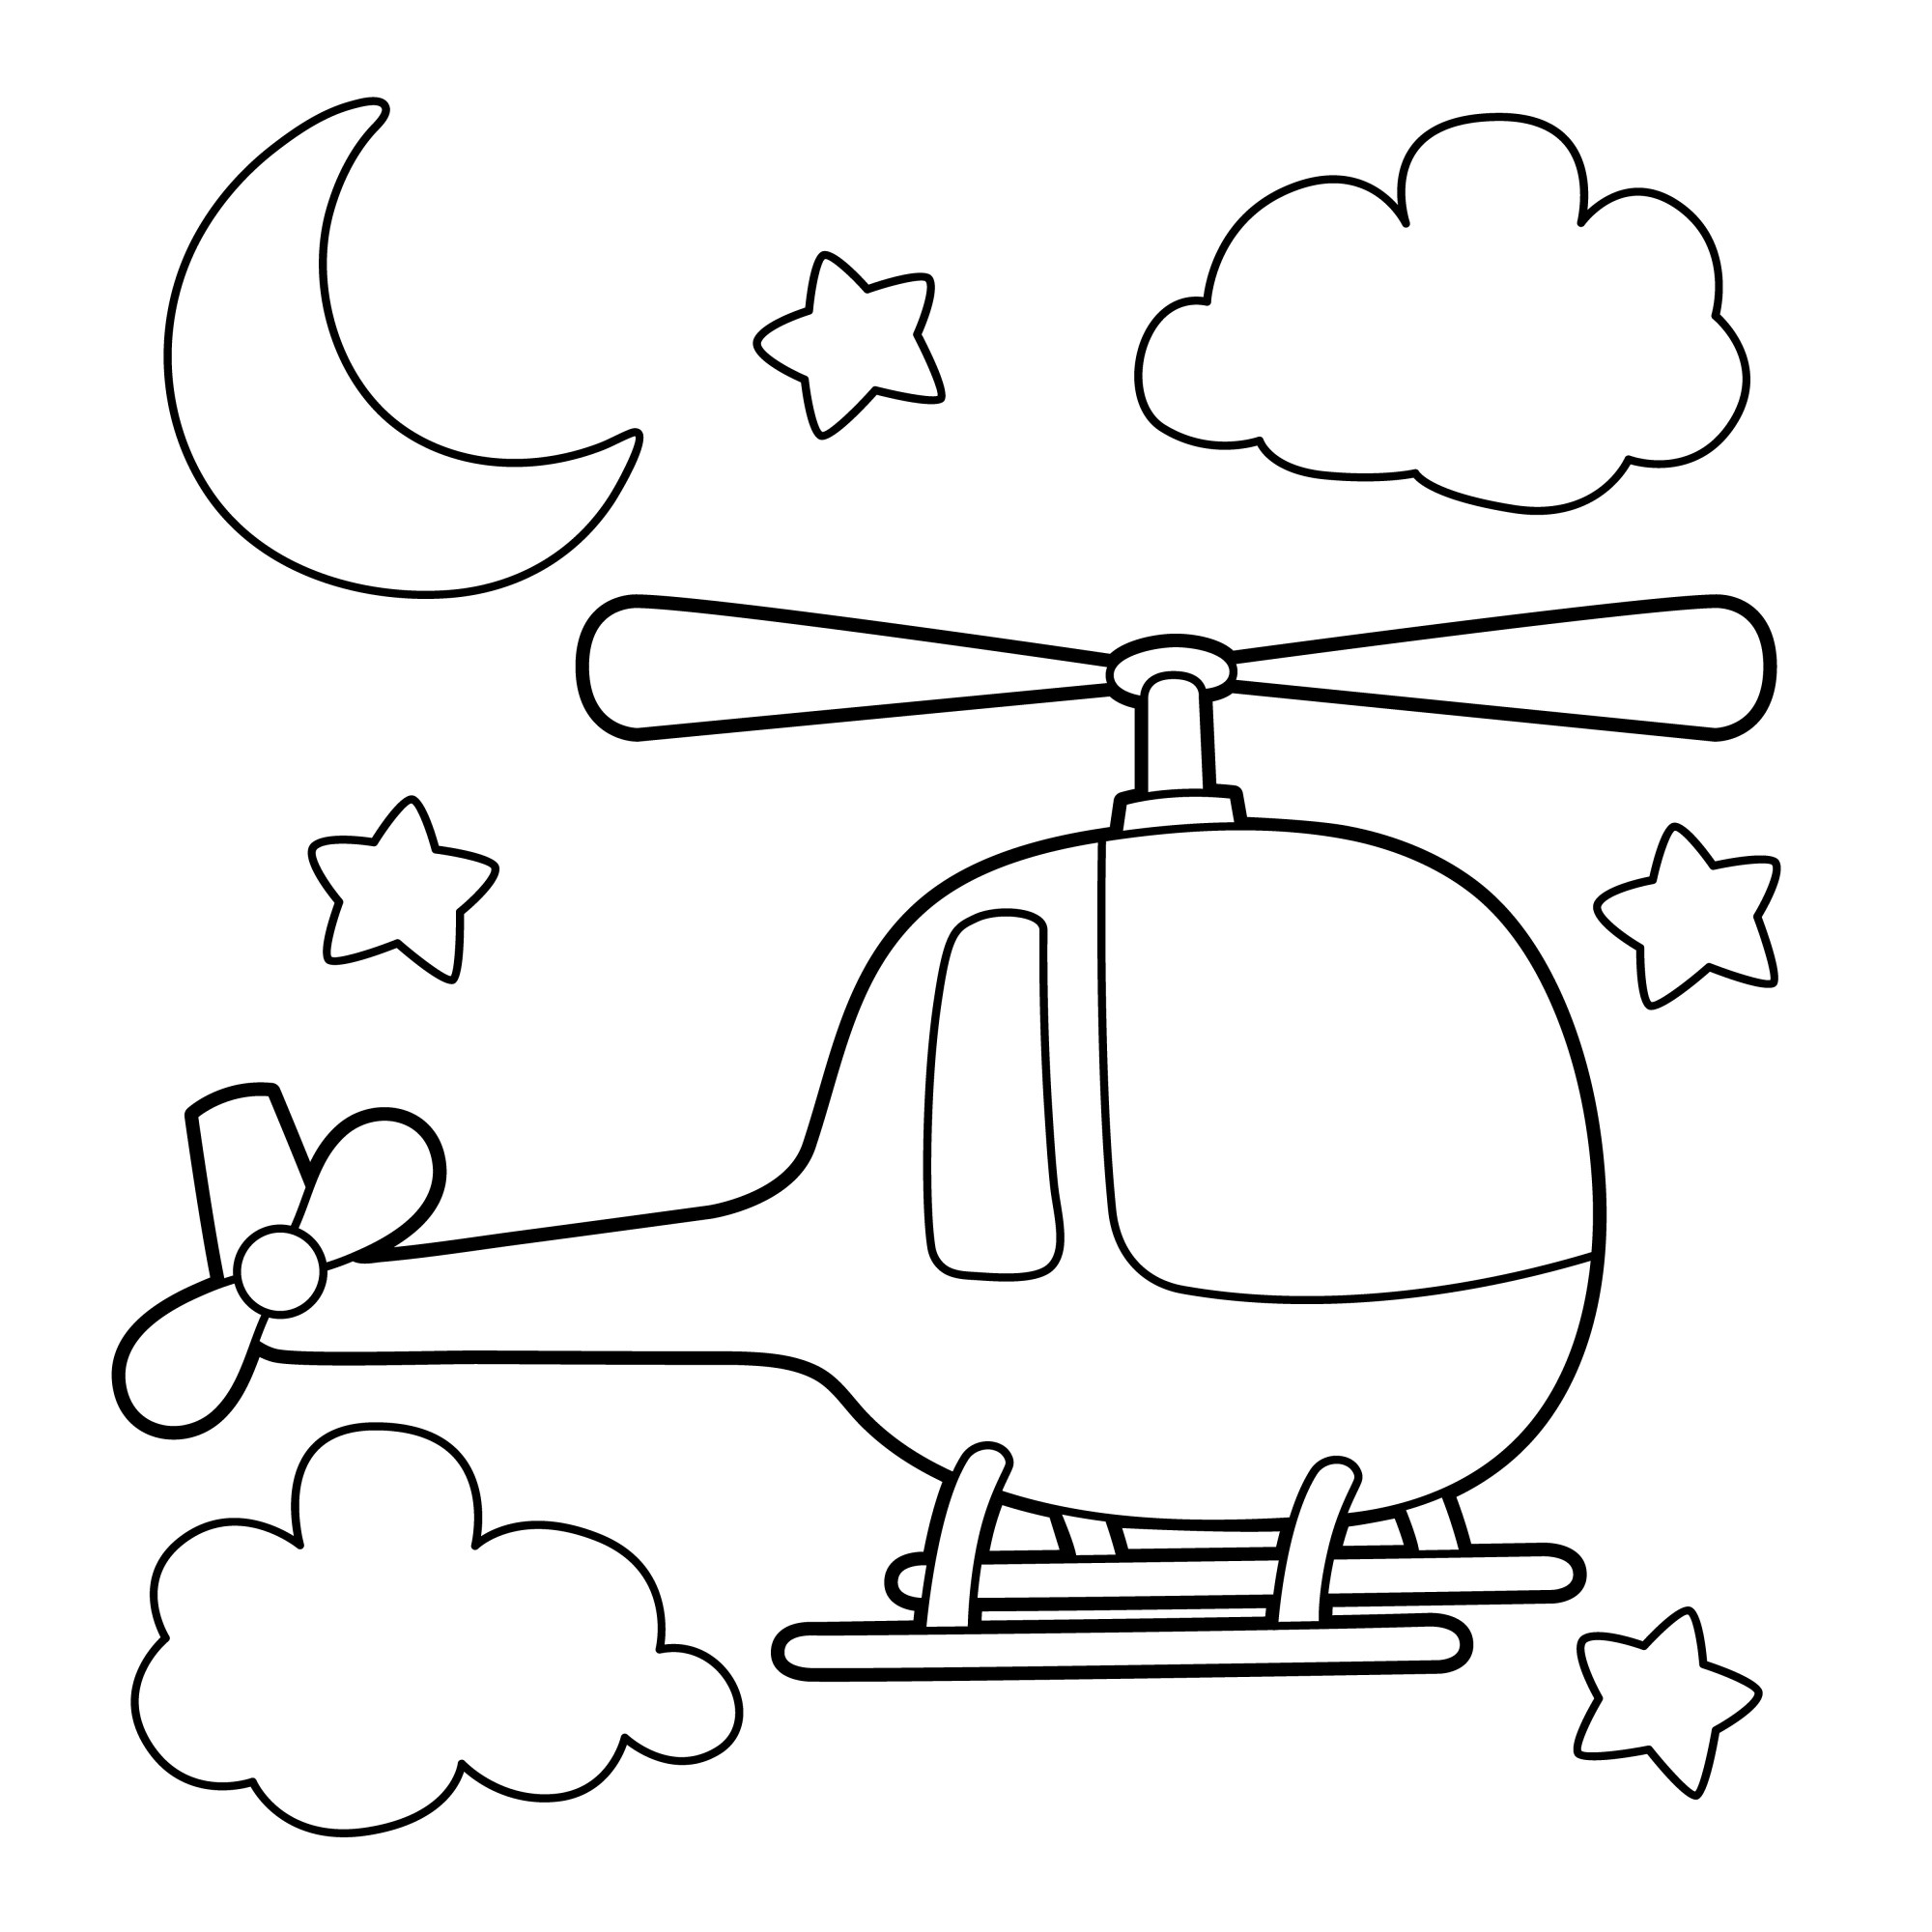 Раскраска для детей: игрушечный вертолет на фоне луны и звезд